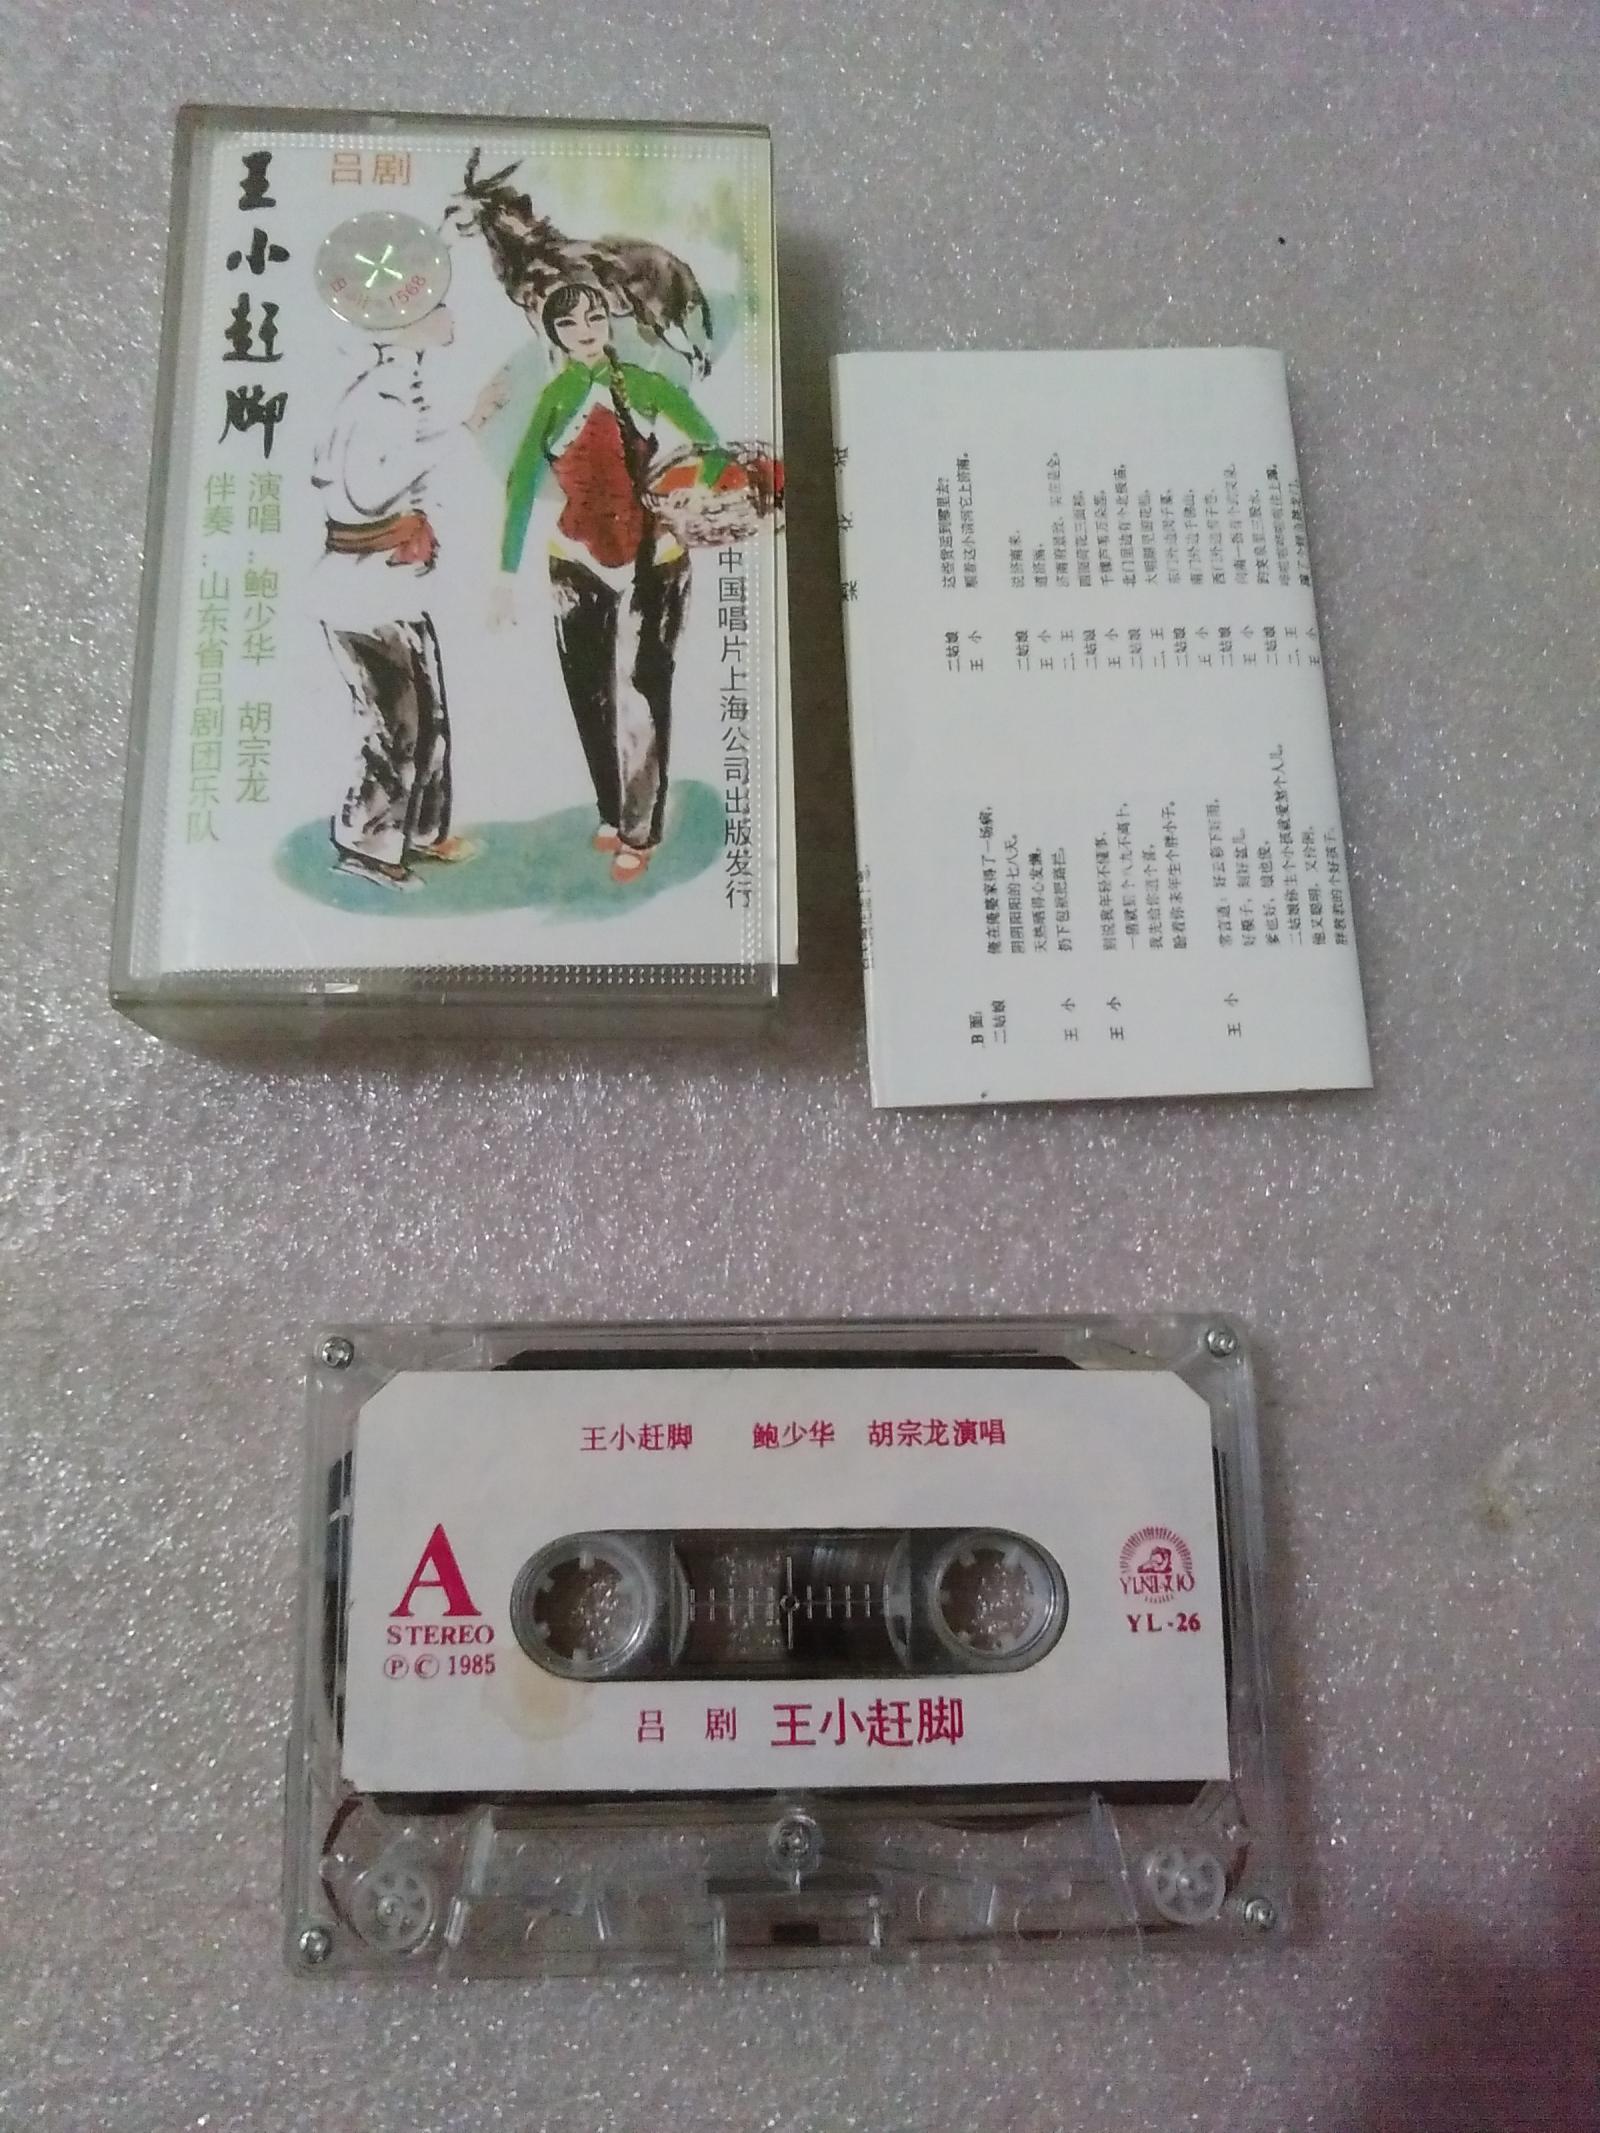 磁带：吕剧-王小赶脚（鲍少华 胡宗龙/演唱）有歌词。中国唱片公司上海公司出版【货号：46】自然旧。正版。正常播放。详见书影。